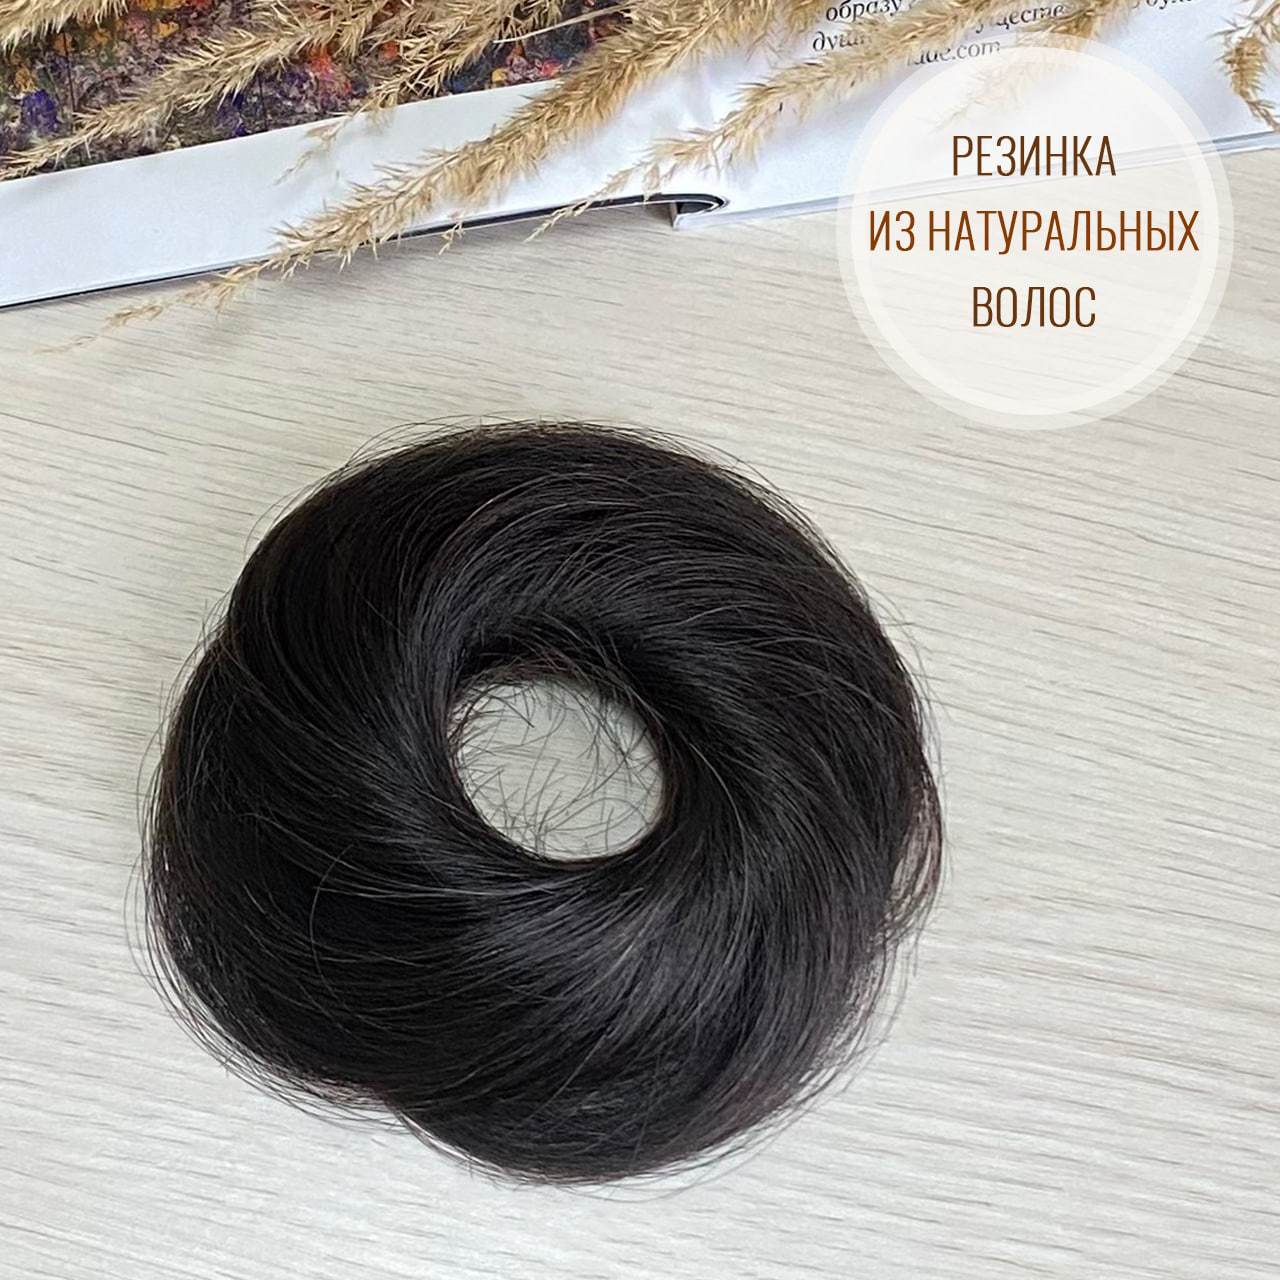 Пучок на резинке из натуральных волос - Черный с коричневым отливом#1b